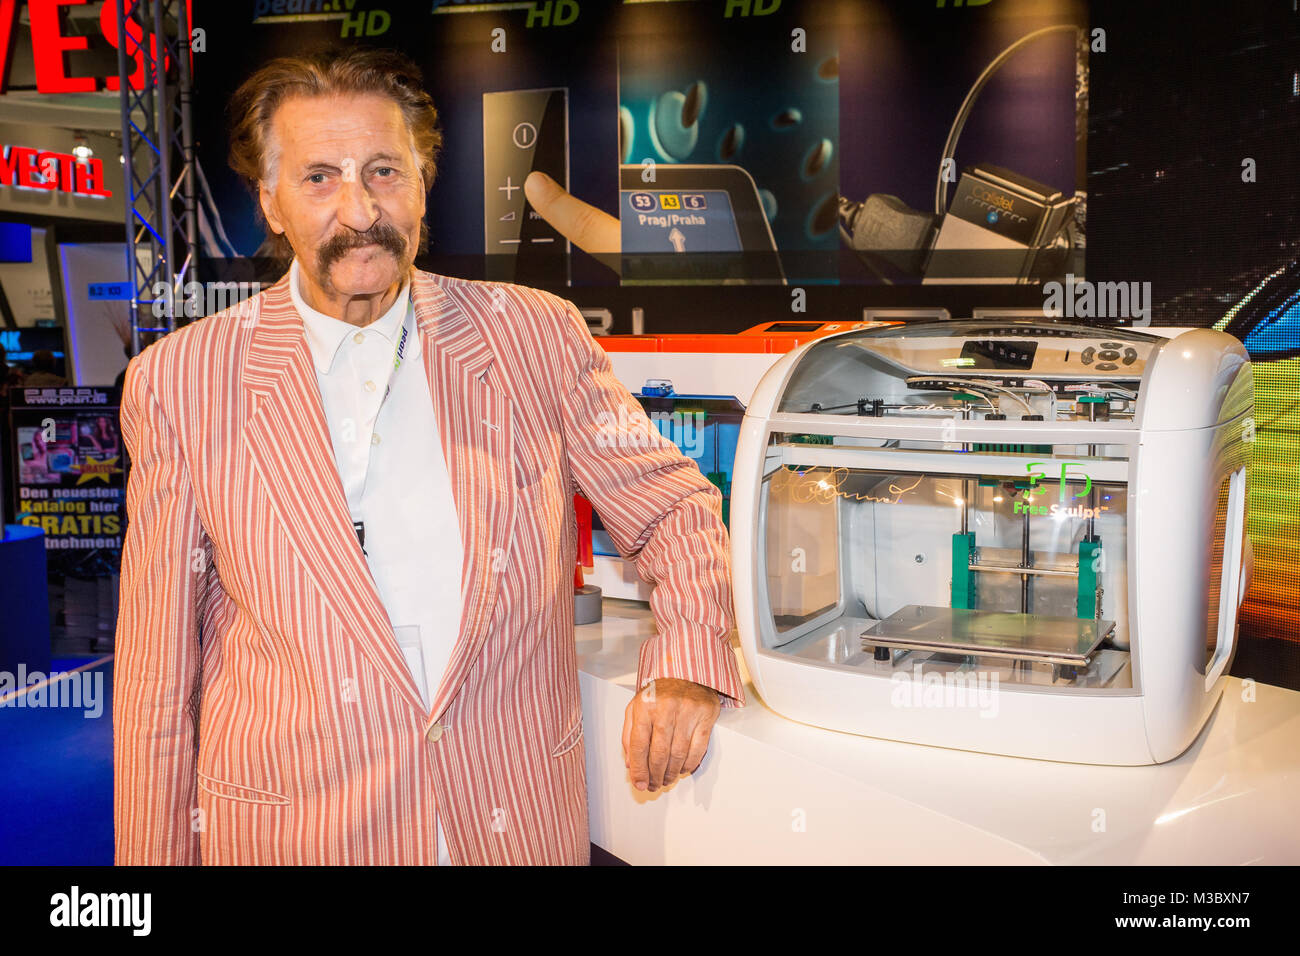 Prof. Luigi Colani (deutscher Industriedesigner) stellt beim Internetversandhandel Pearl sterben neusten 3D kostenlos Sculpt Drucker bei der Pressekonferenz in Halle 8.2 auf der Internationalen Funkausstellung 2013 in Berlin vor. Stockfoto